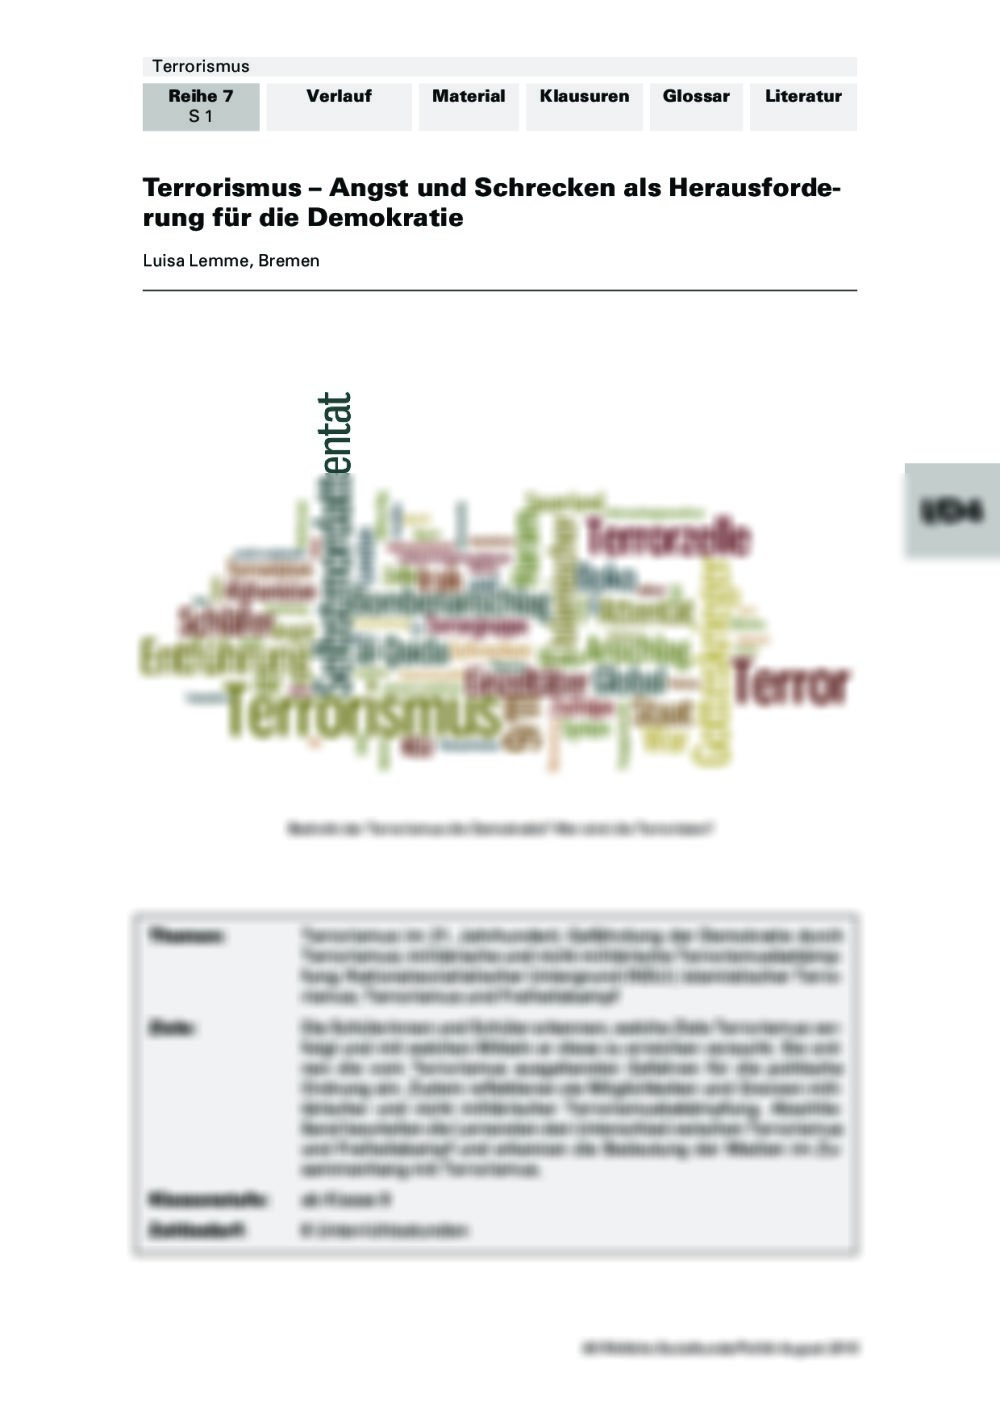 Terrorismus als Bedrohung der Demokratie - Seite 1